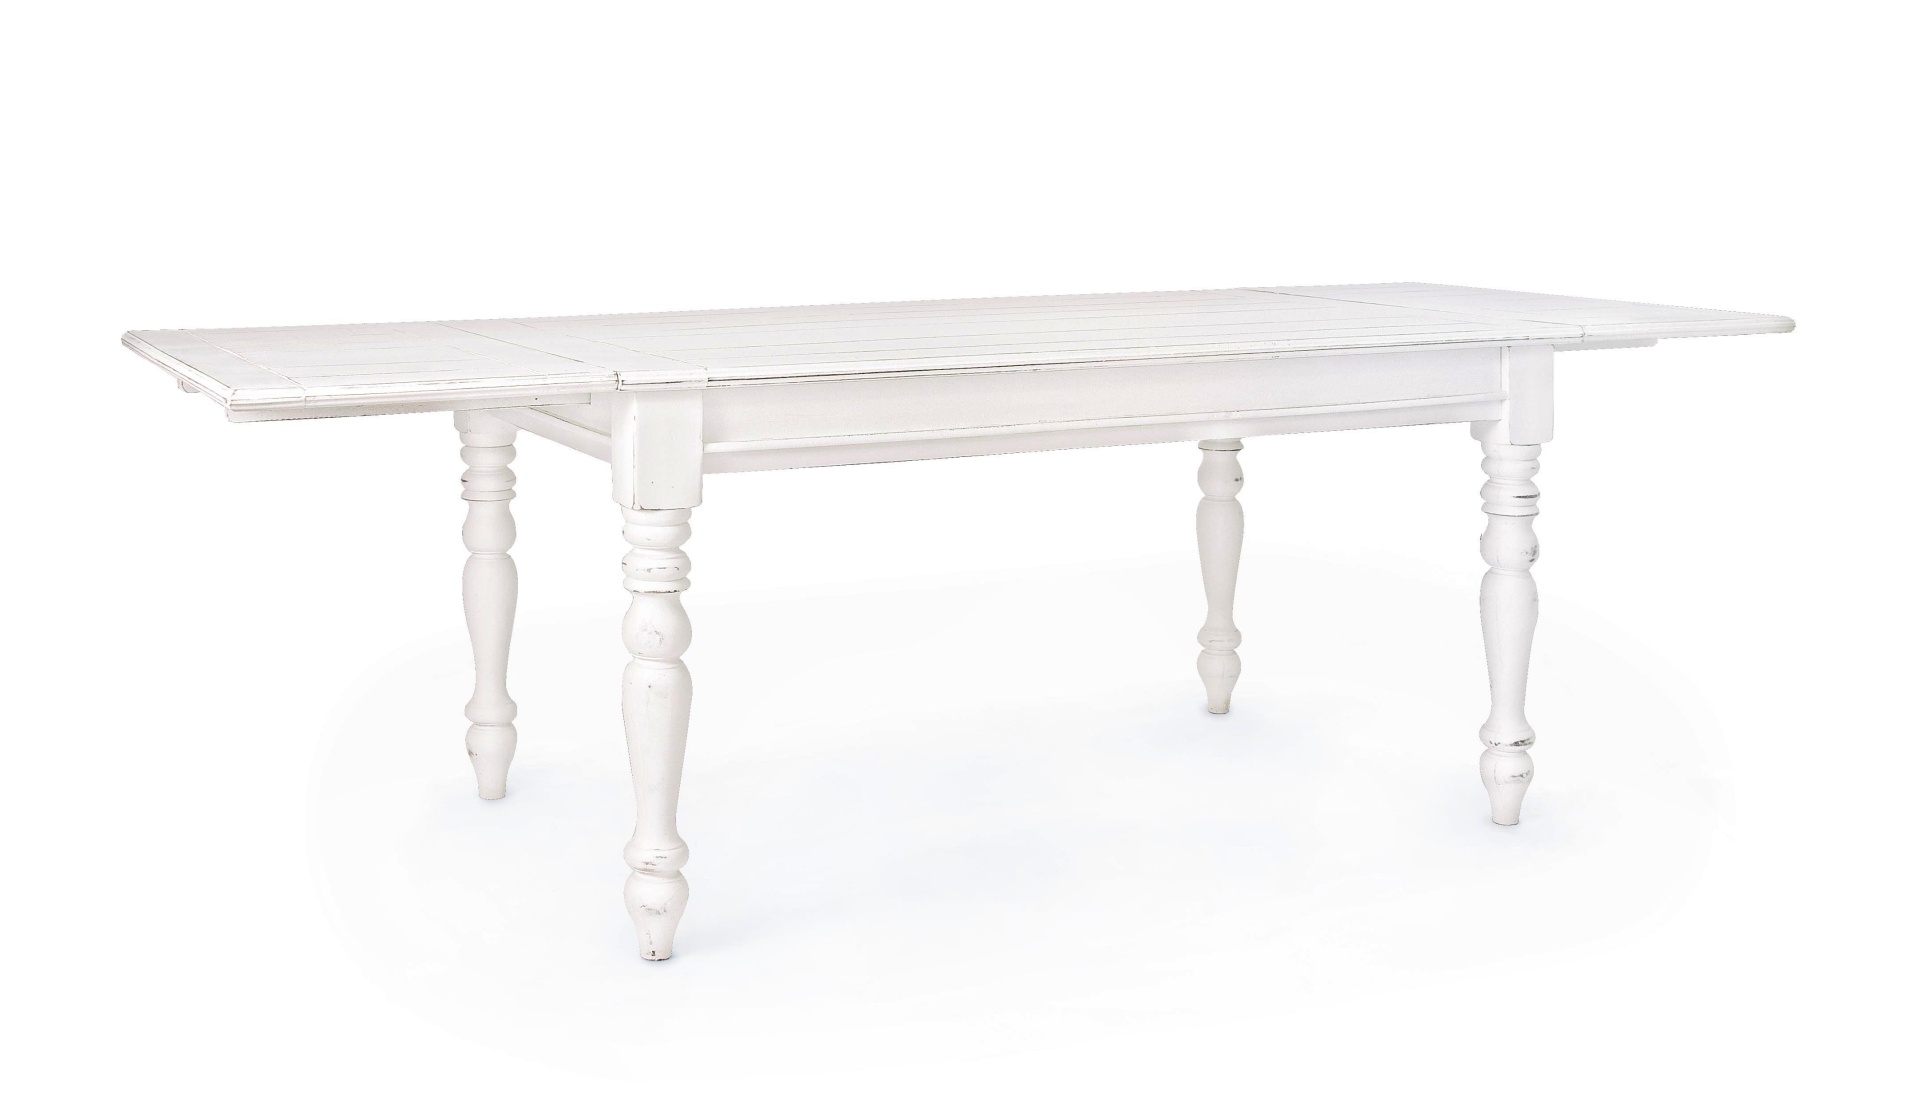 Der Esstisch Colette überzeugt mit seinem klassischem Design. Gefertigt wurde er aus Mangoholz, welches einen weißen Farbton besitzt. Das Gestell des Tisches ist auch aus MAngoholz. Der Tisch ist ausziehbar von einer Breite von 150 cm auf 240 cm.